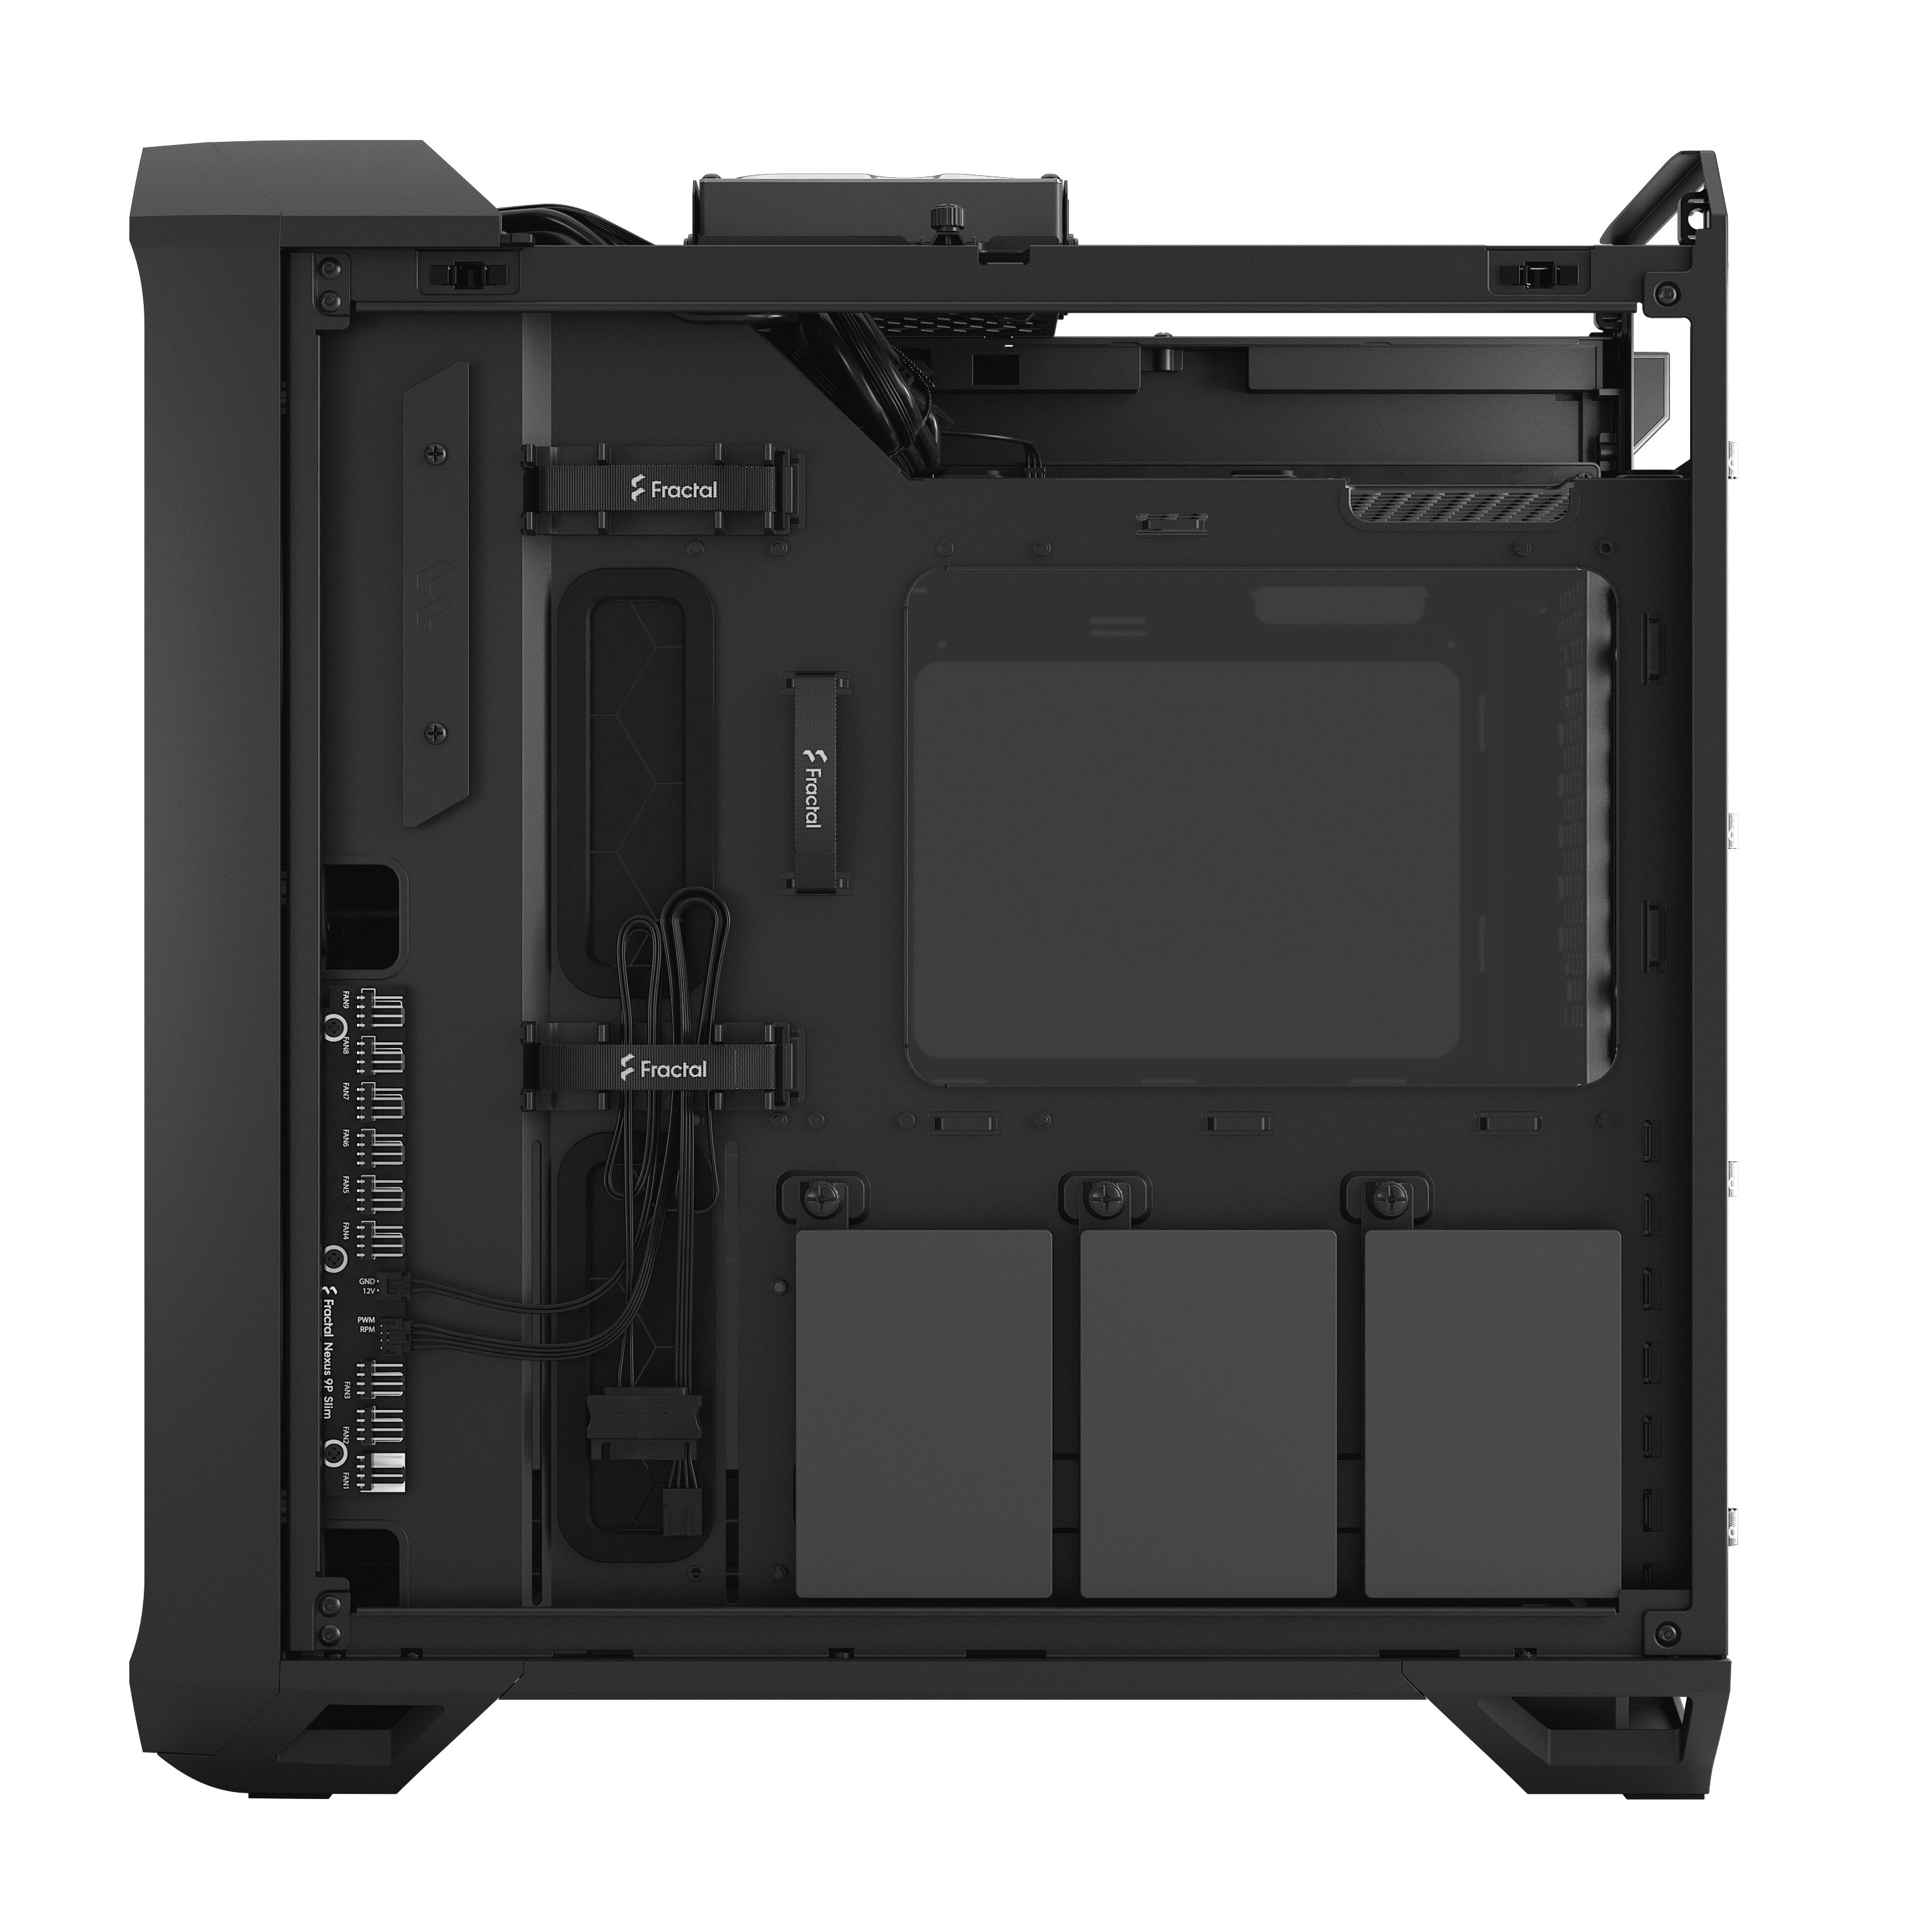 Fractal Design - Fractal Design Torrent Compact Black TG Dark Tint Mid Tower Case